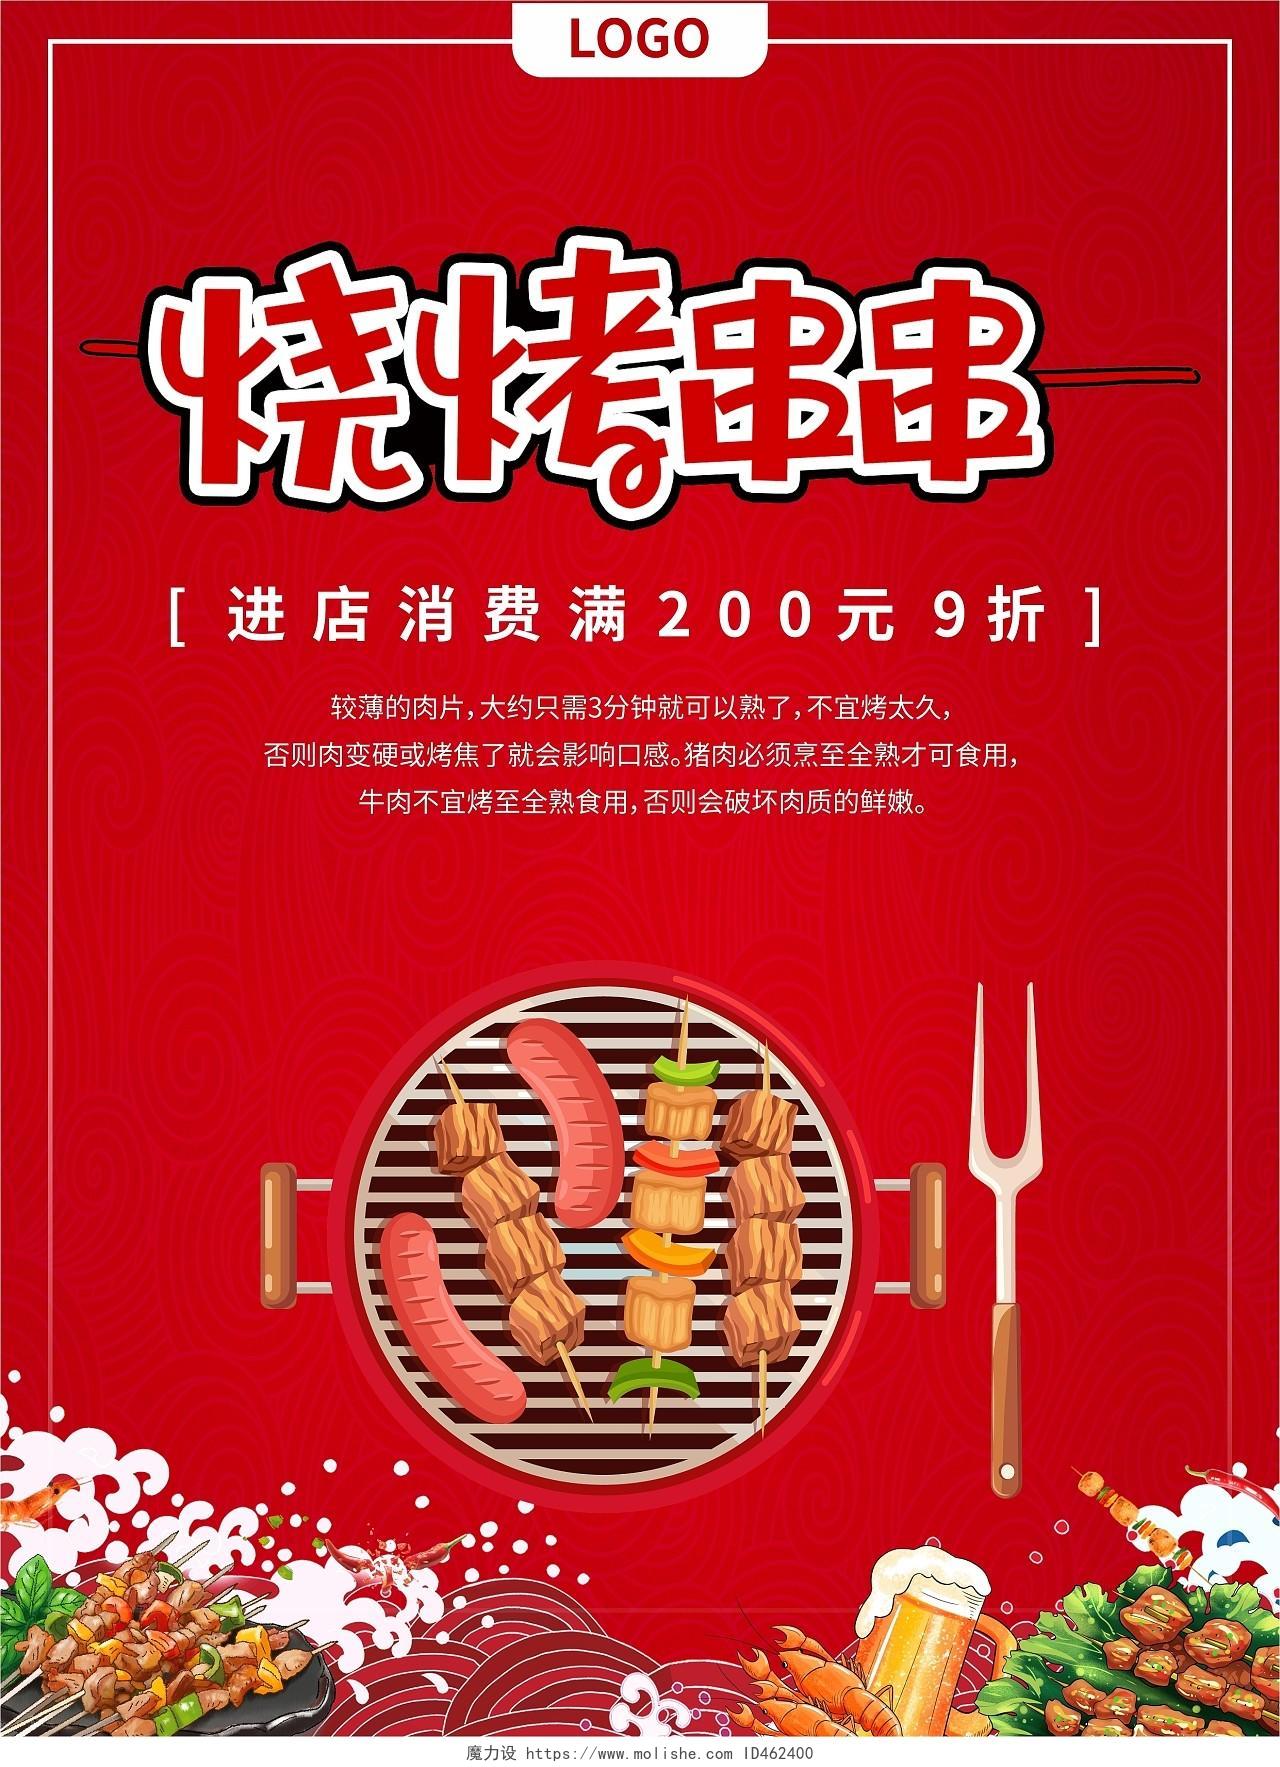 经典红色简约大气餐饮美食特色烧烤菜单宣传单